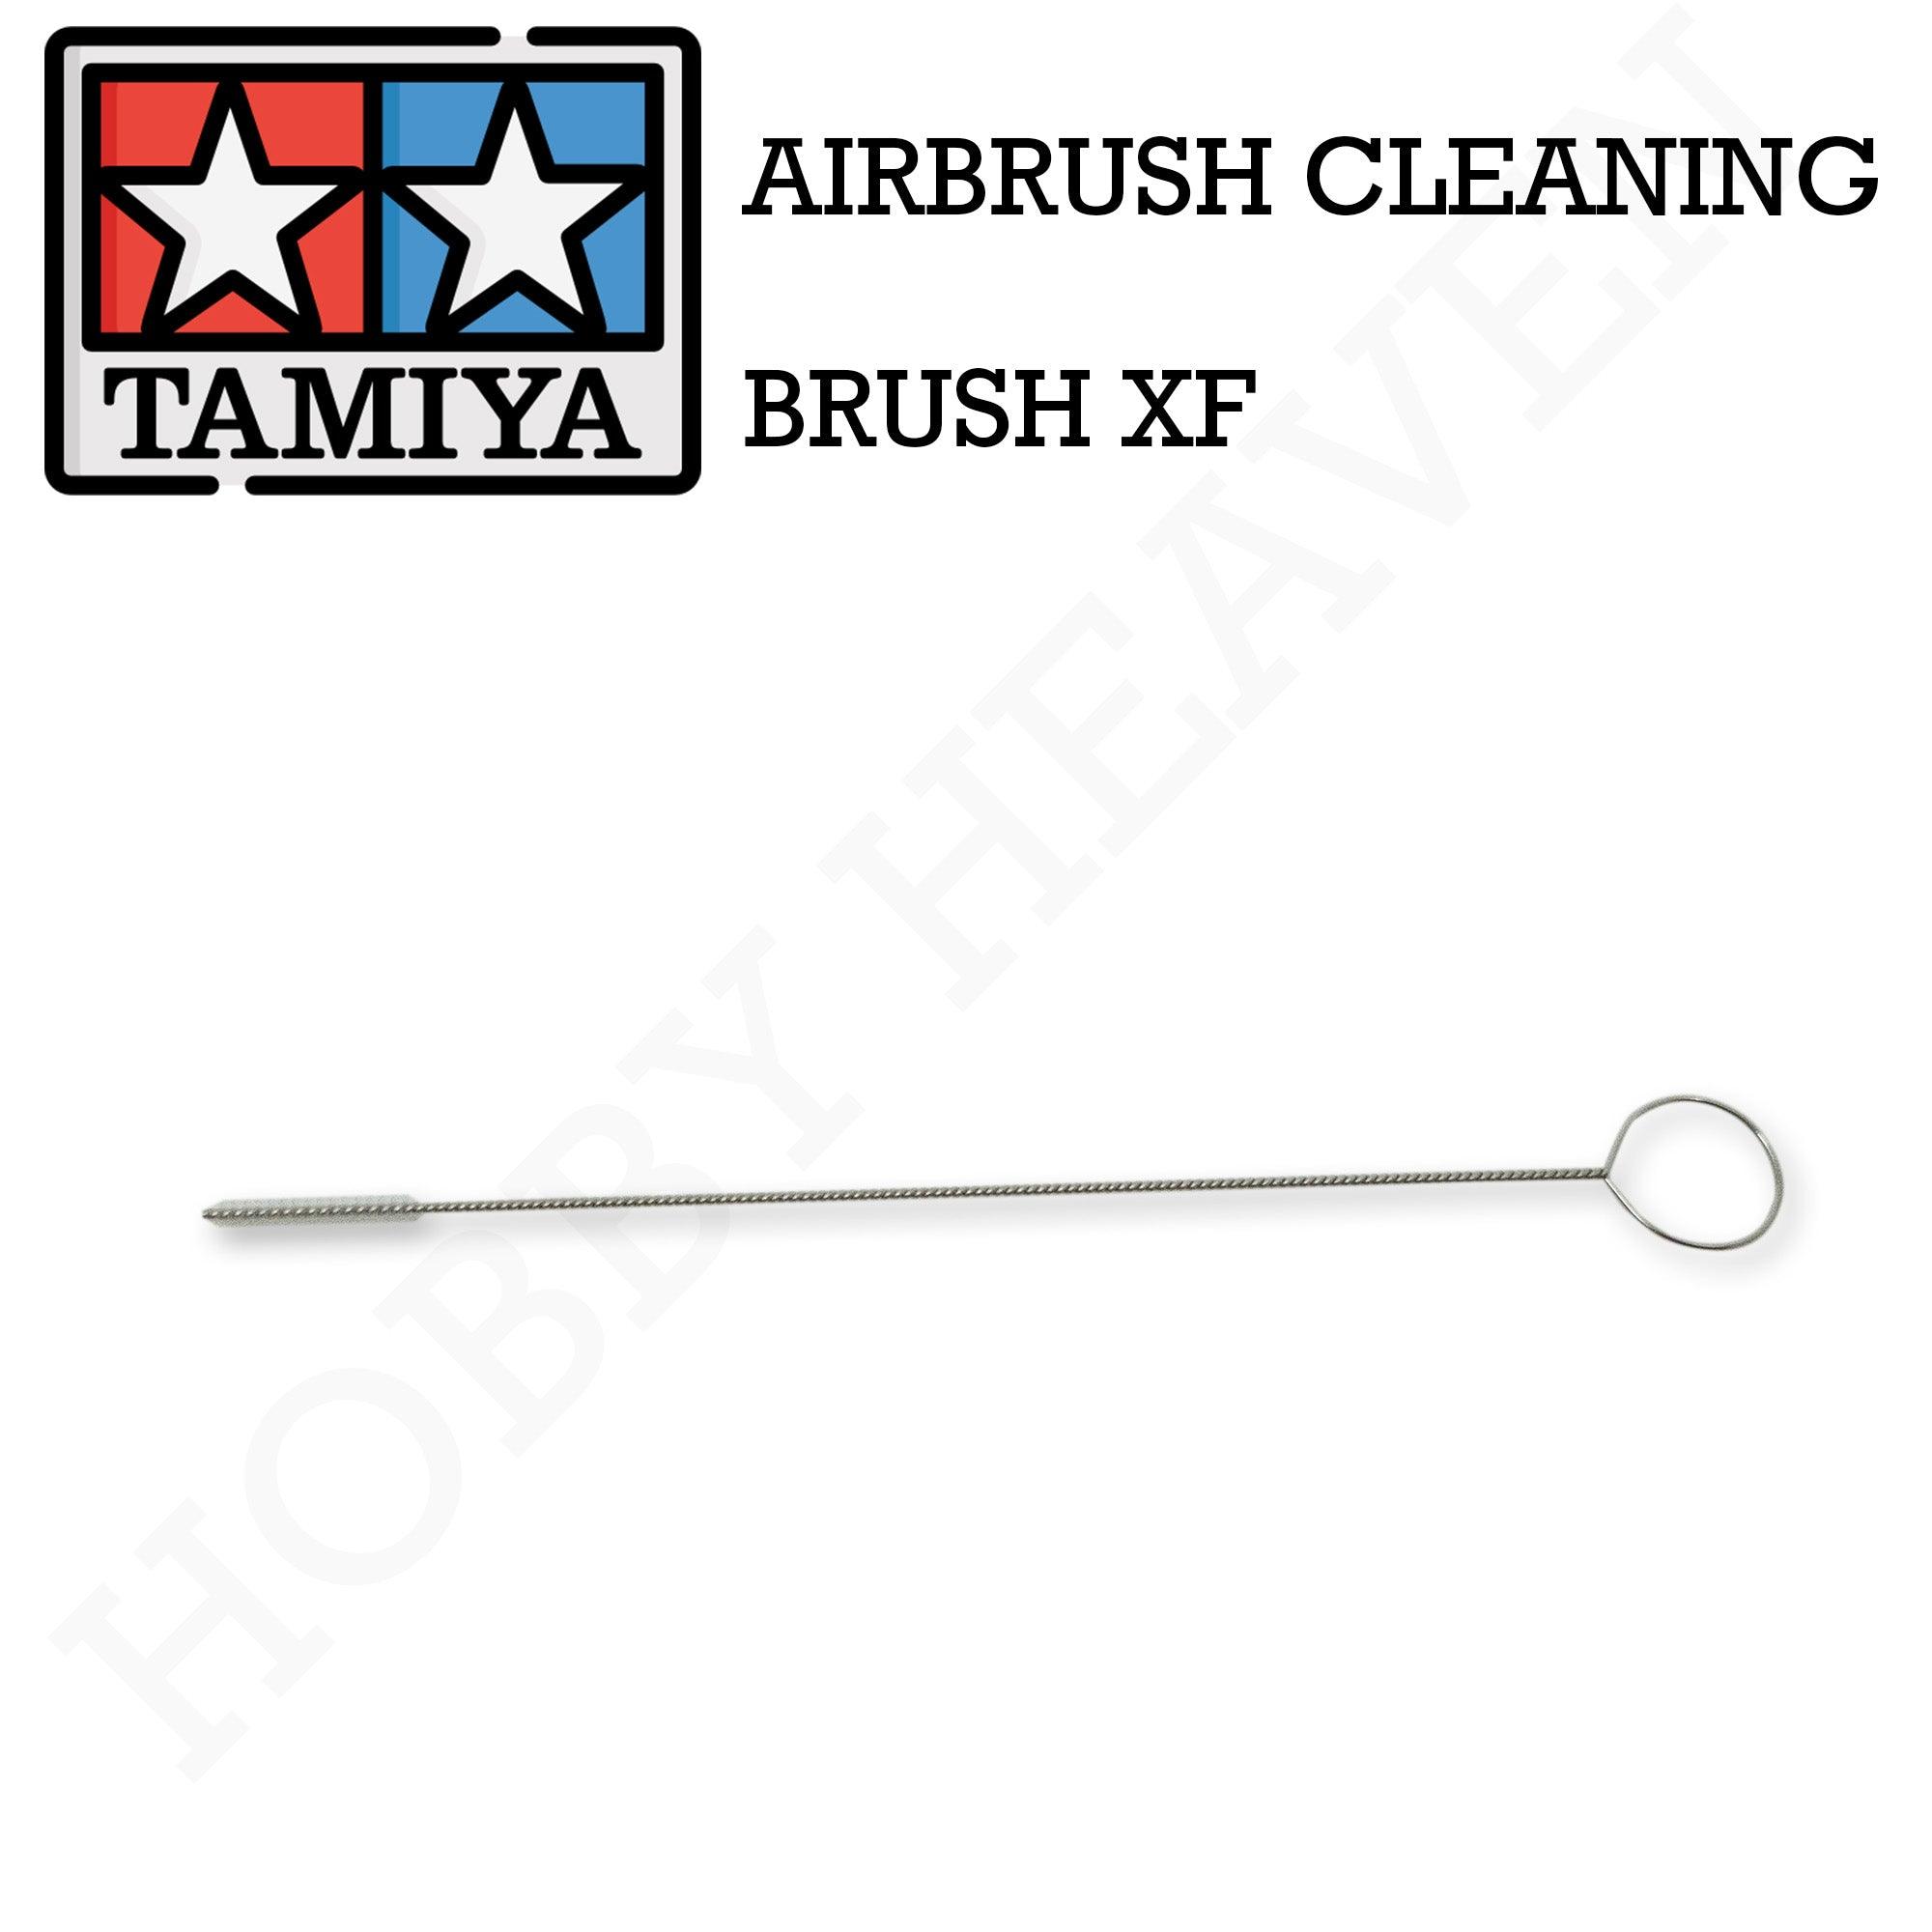 Tamiya Sw Airbrush Cleaning Brush Xf 74550